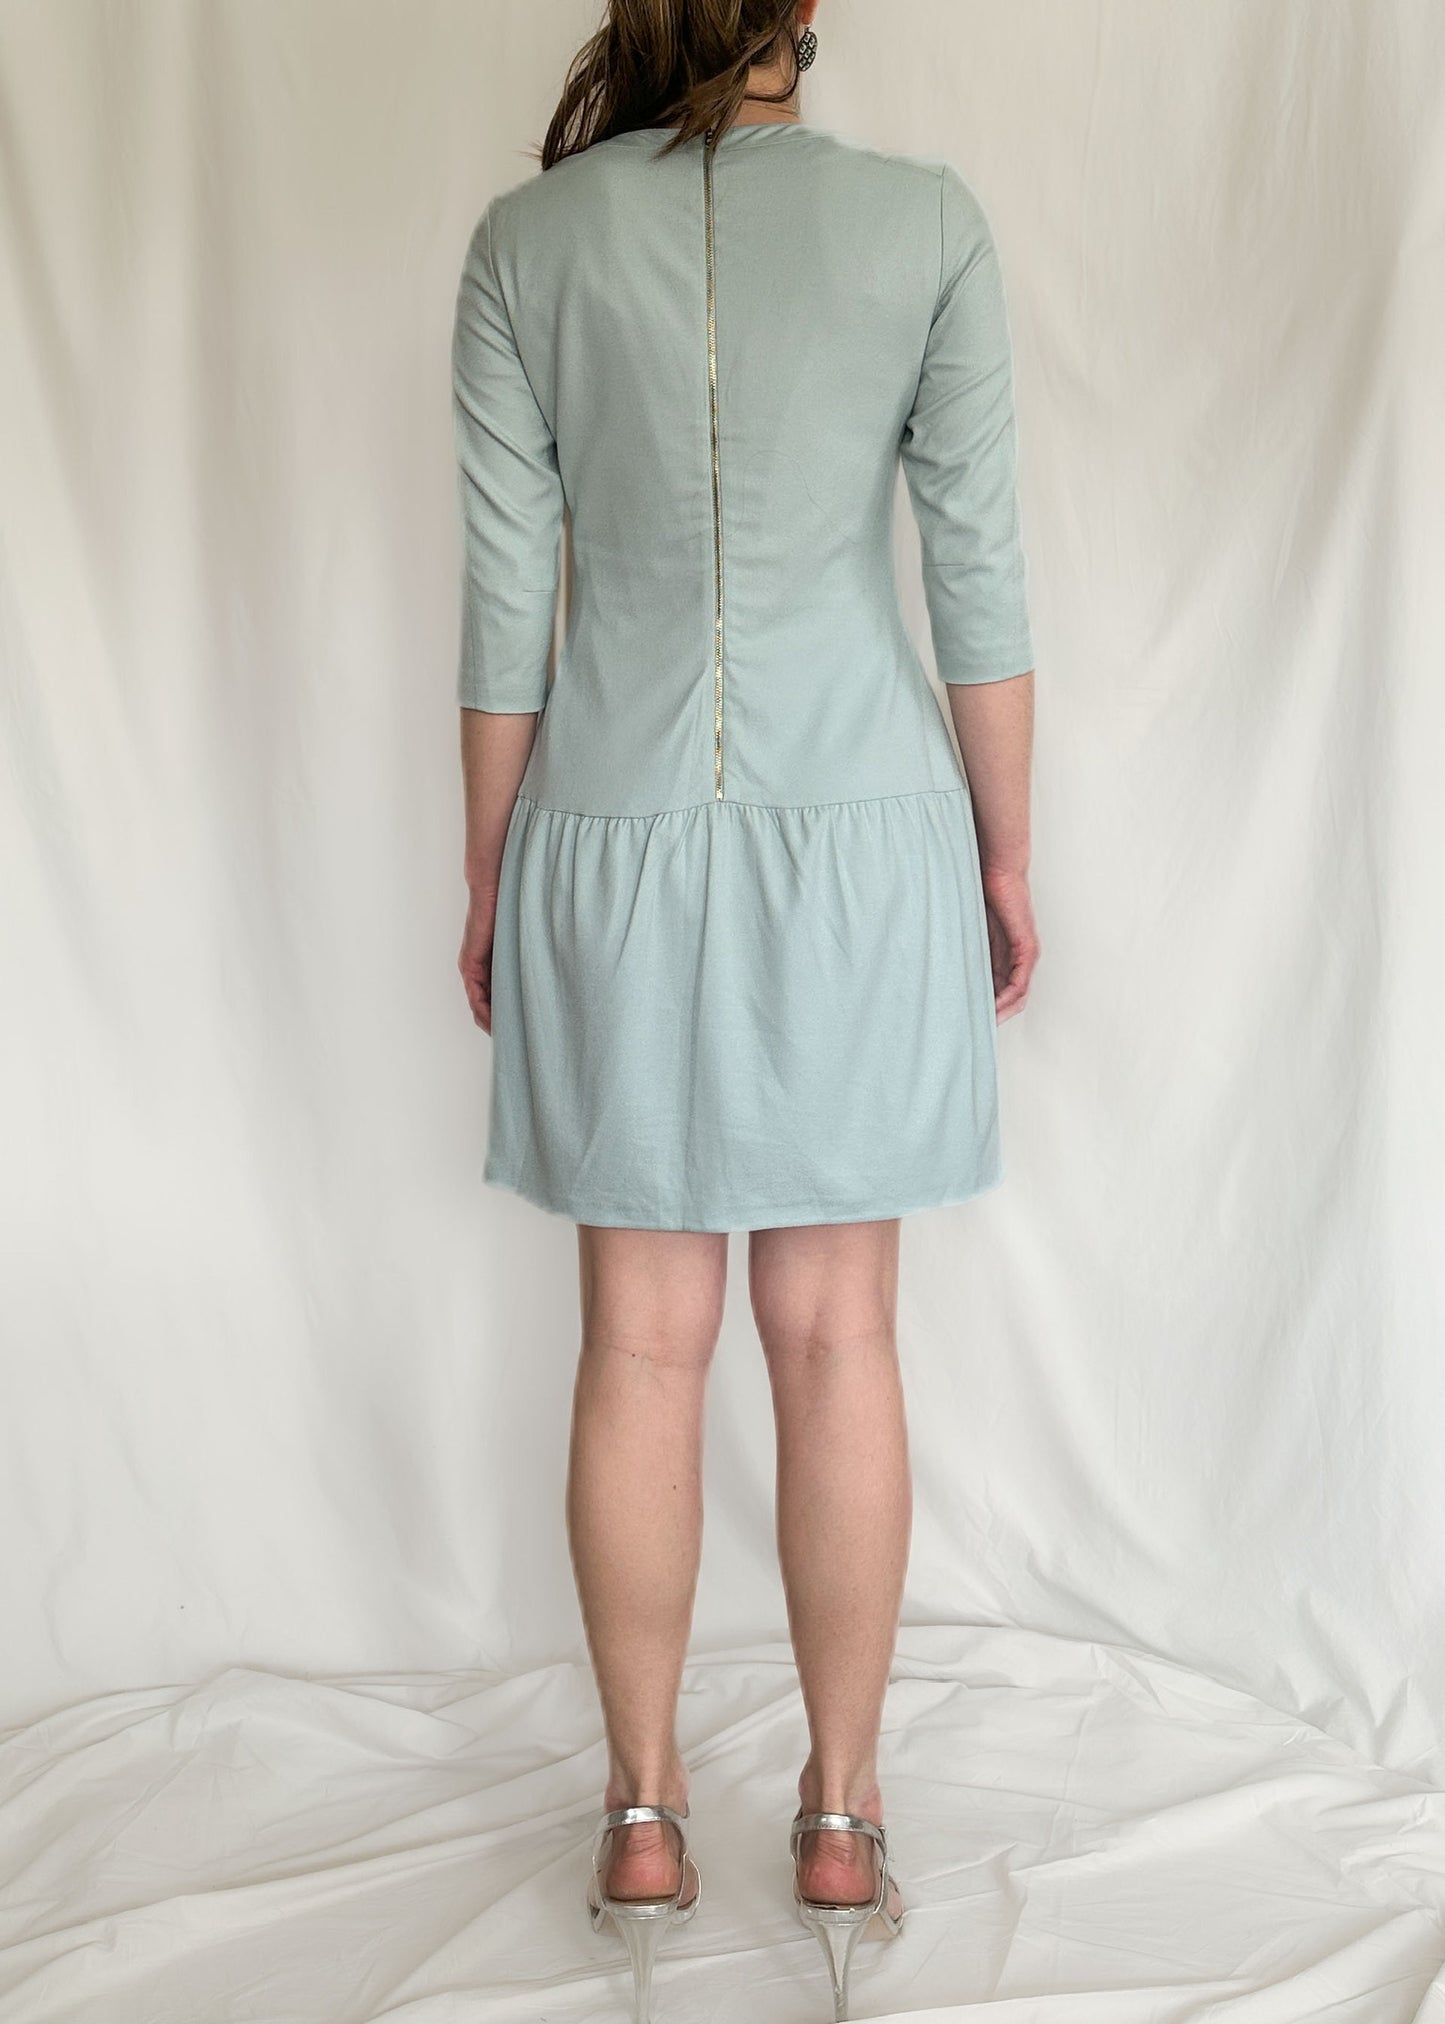 Ted Baker Mint Green Drop Waist Dress Size 2 ( US 6)